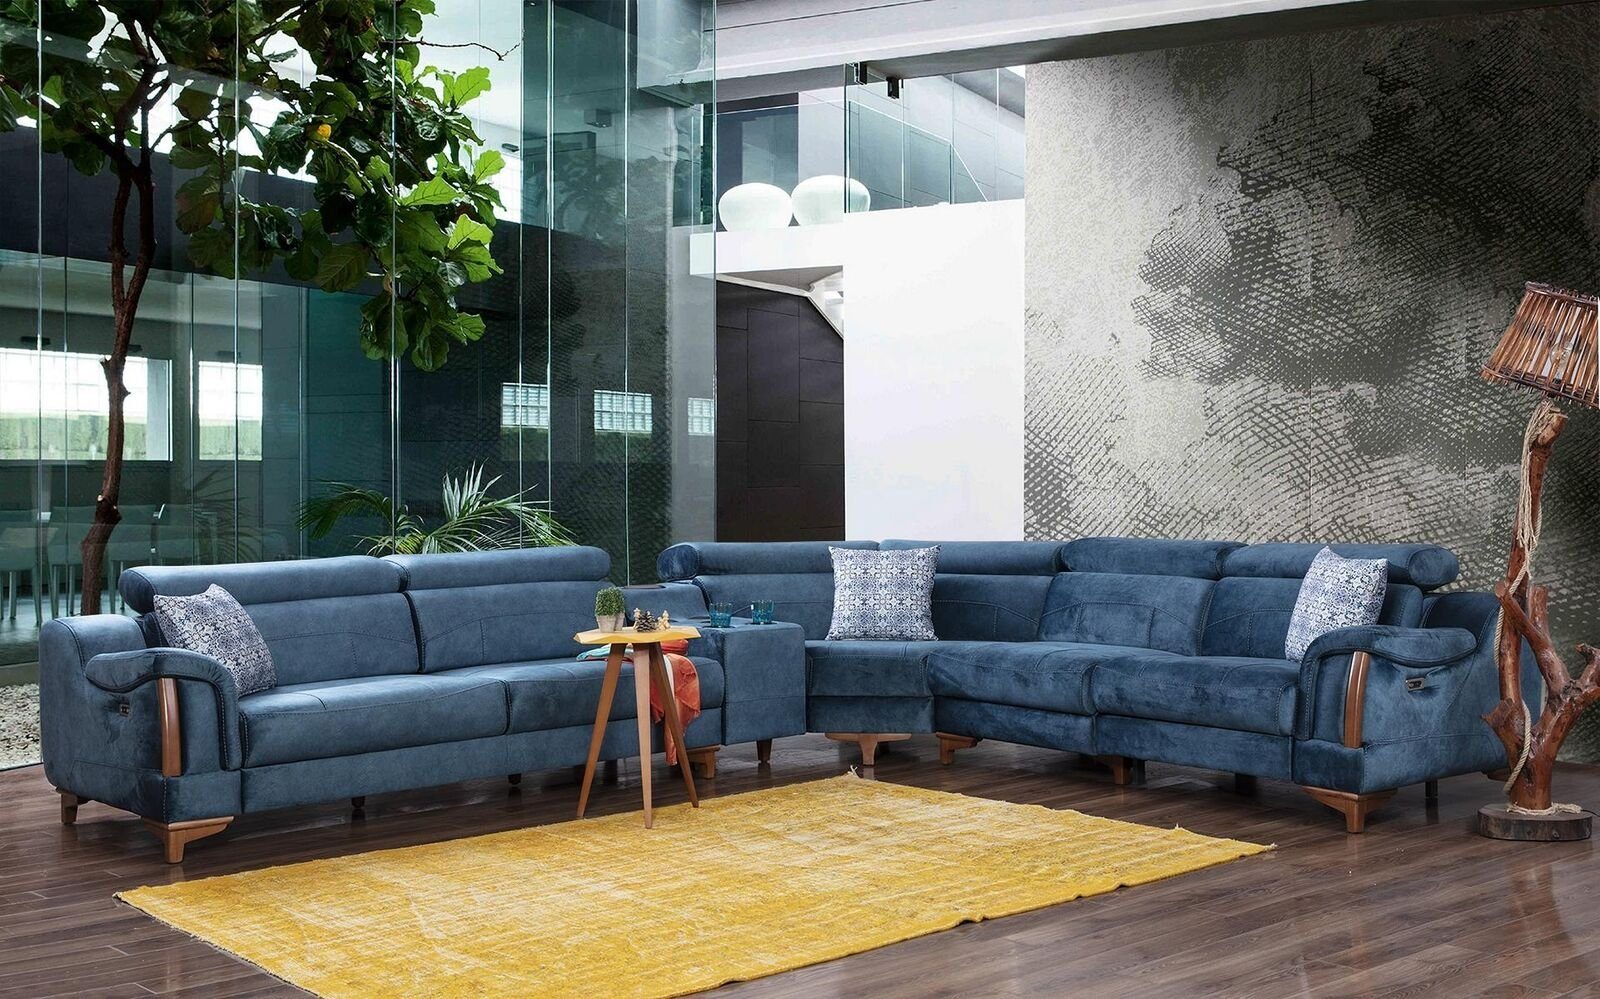 Design JVmoebel Ecksofa Europa Möbel Textil, Teile, Couch Modern 6 Sofa in L-Form Made Ecksofa Wohnzimmer